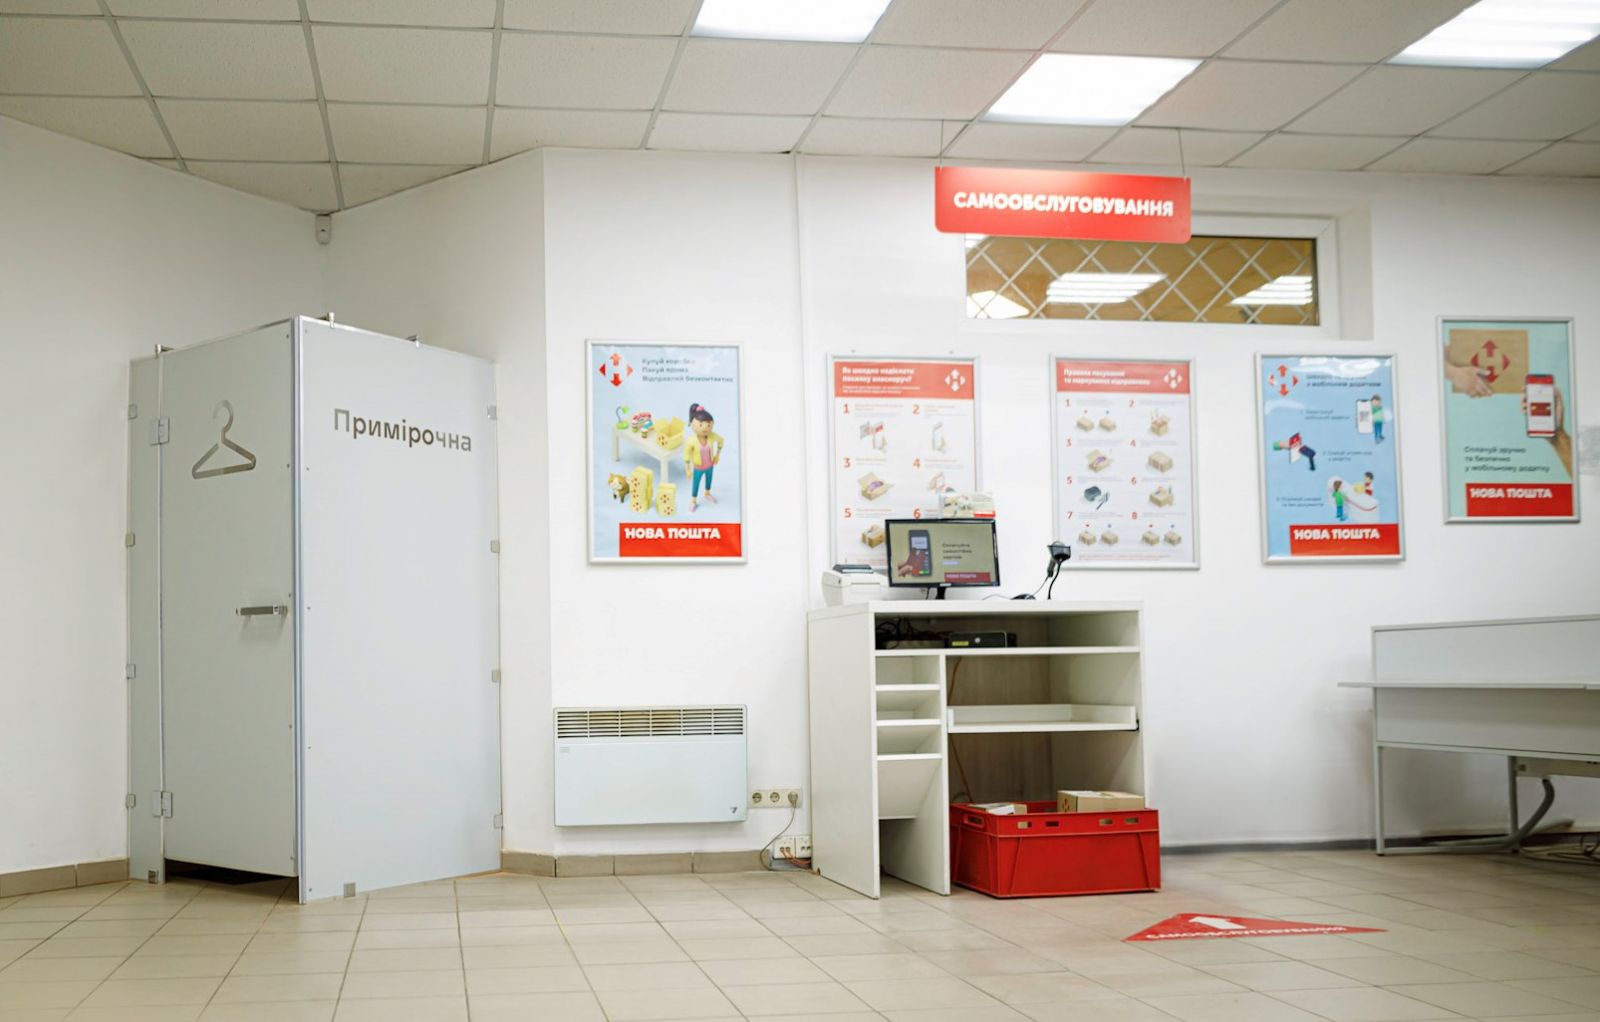 Примерочные в Новой почте установили во многих отделениях Украины